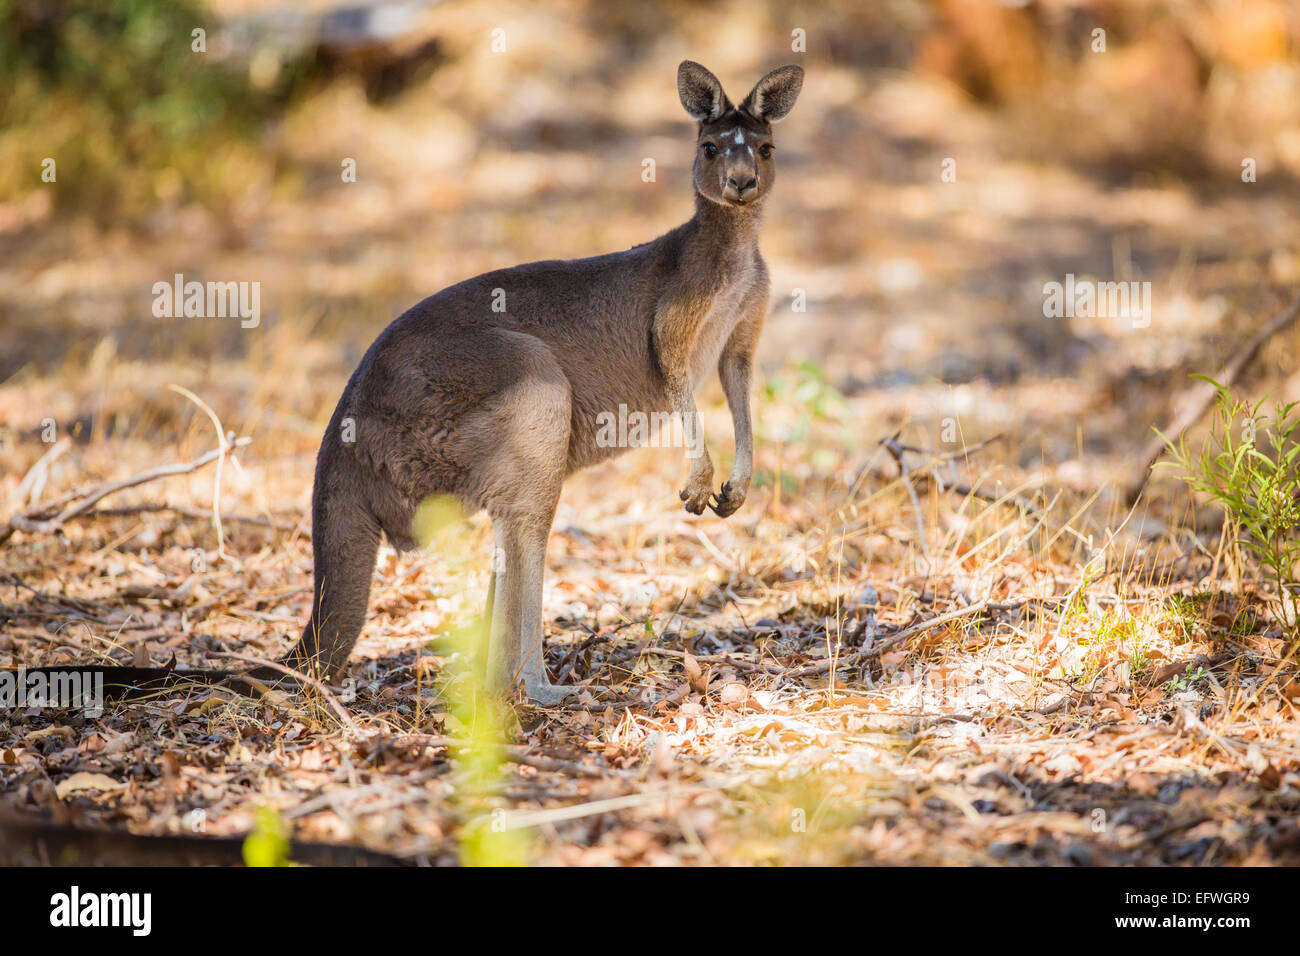 Standing kangaroo in the wild Stock Photo